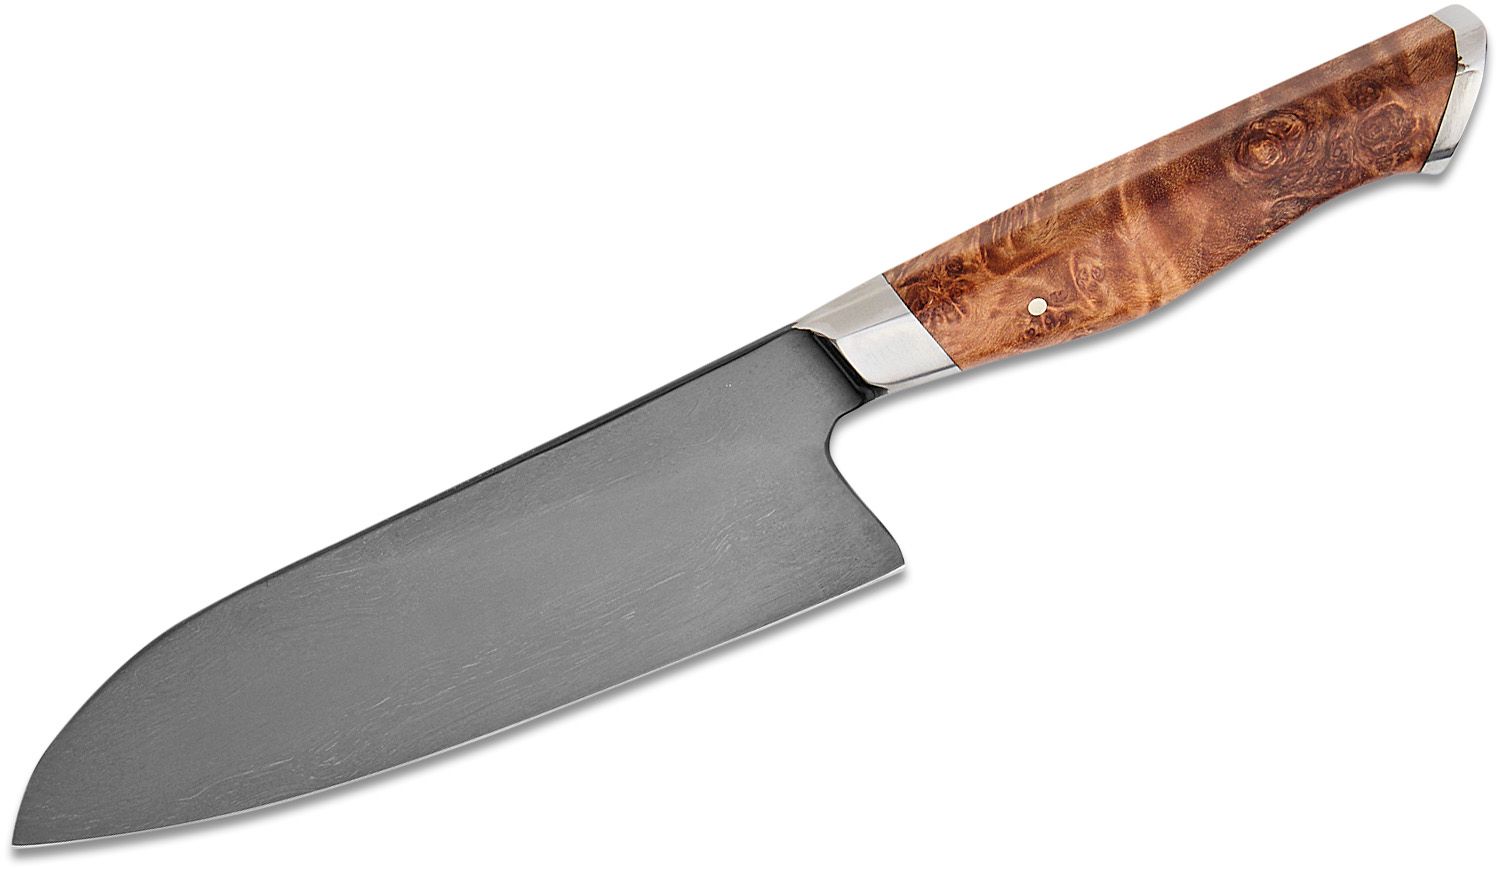 Steelport Carbon Steel Chef Knife, 6